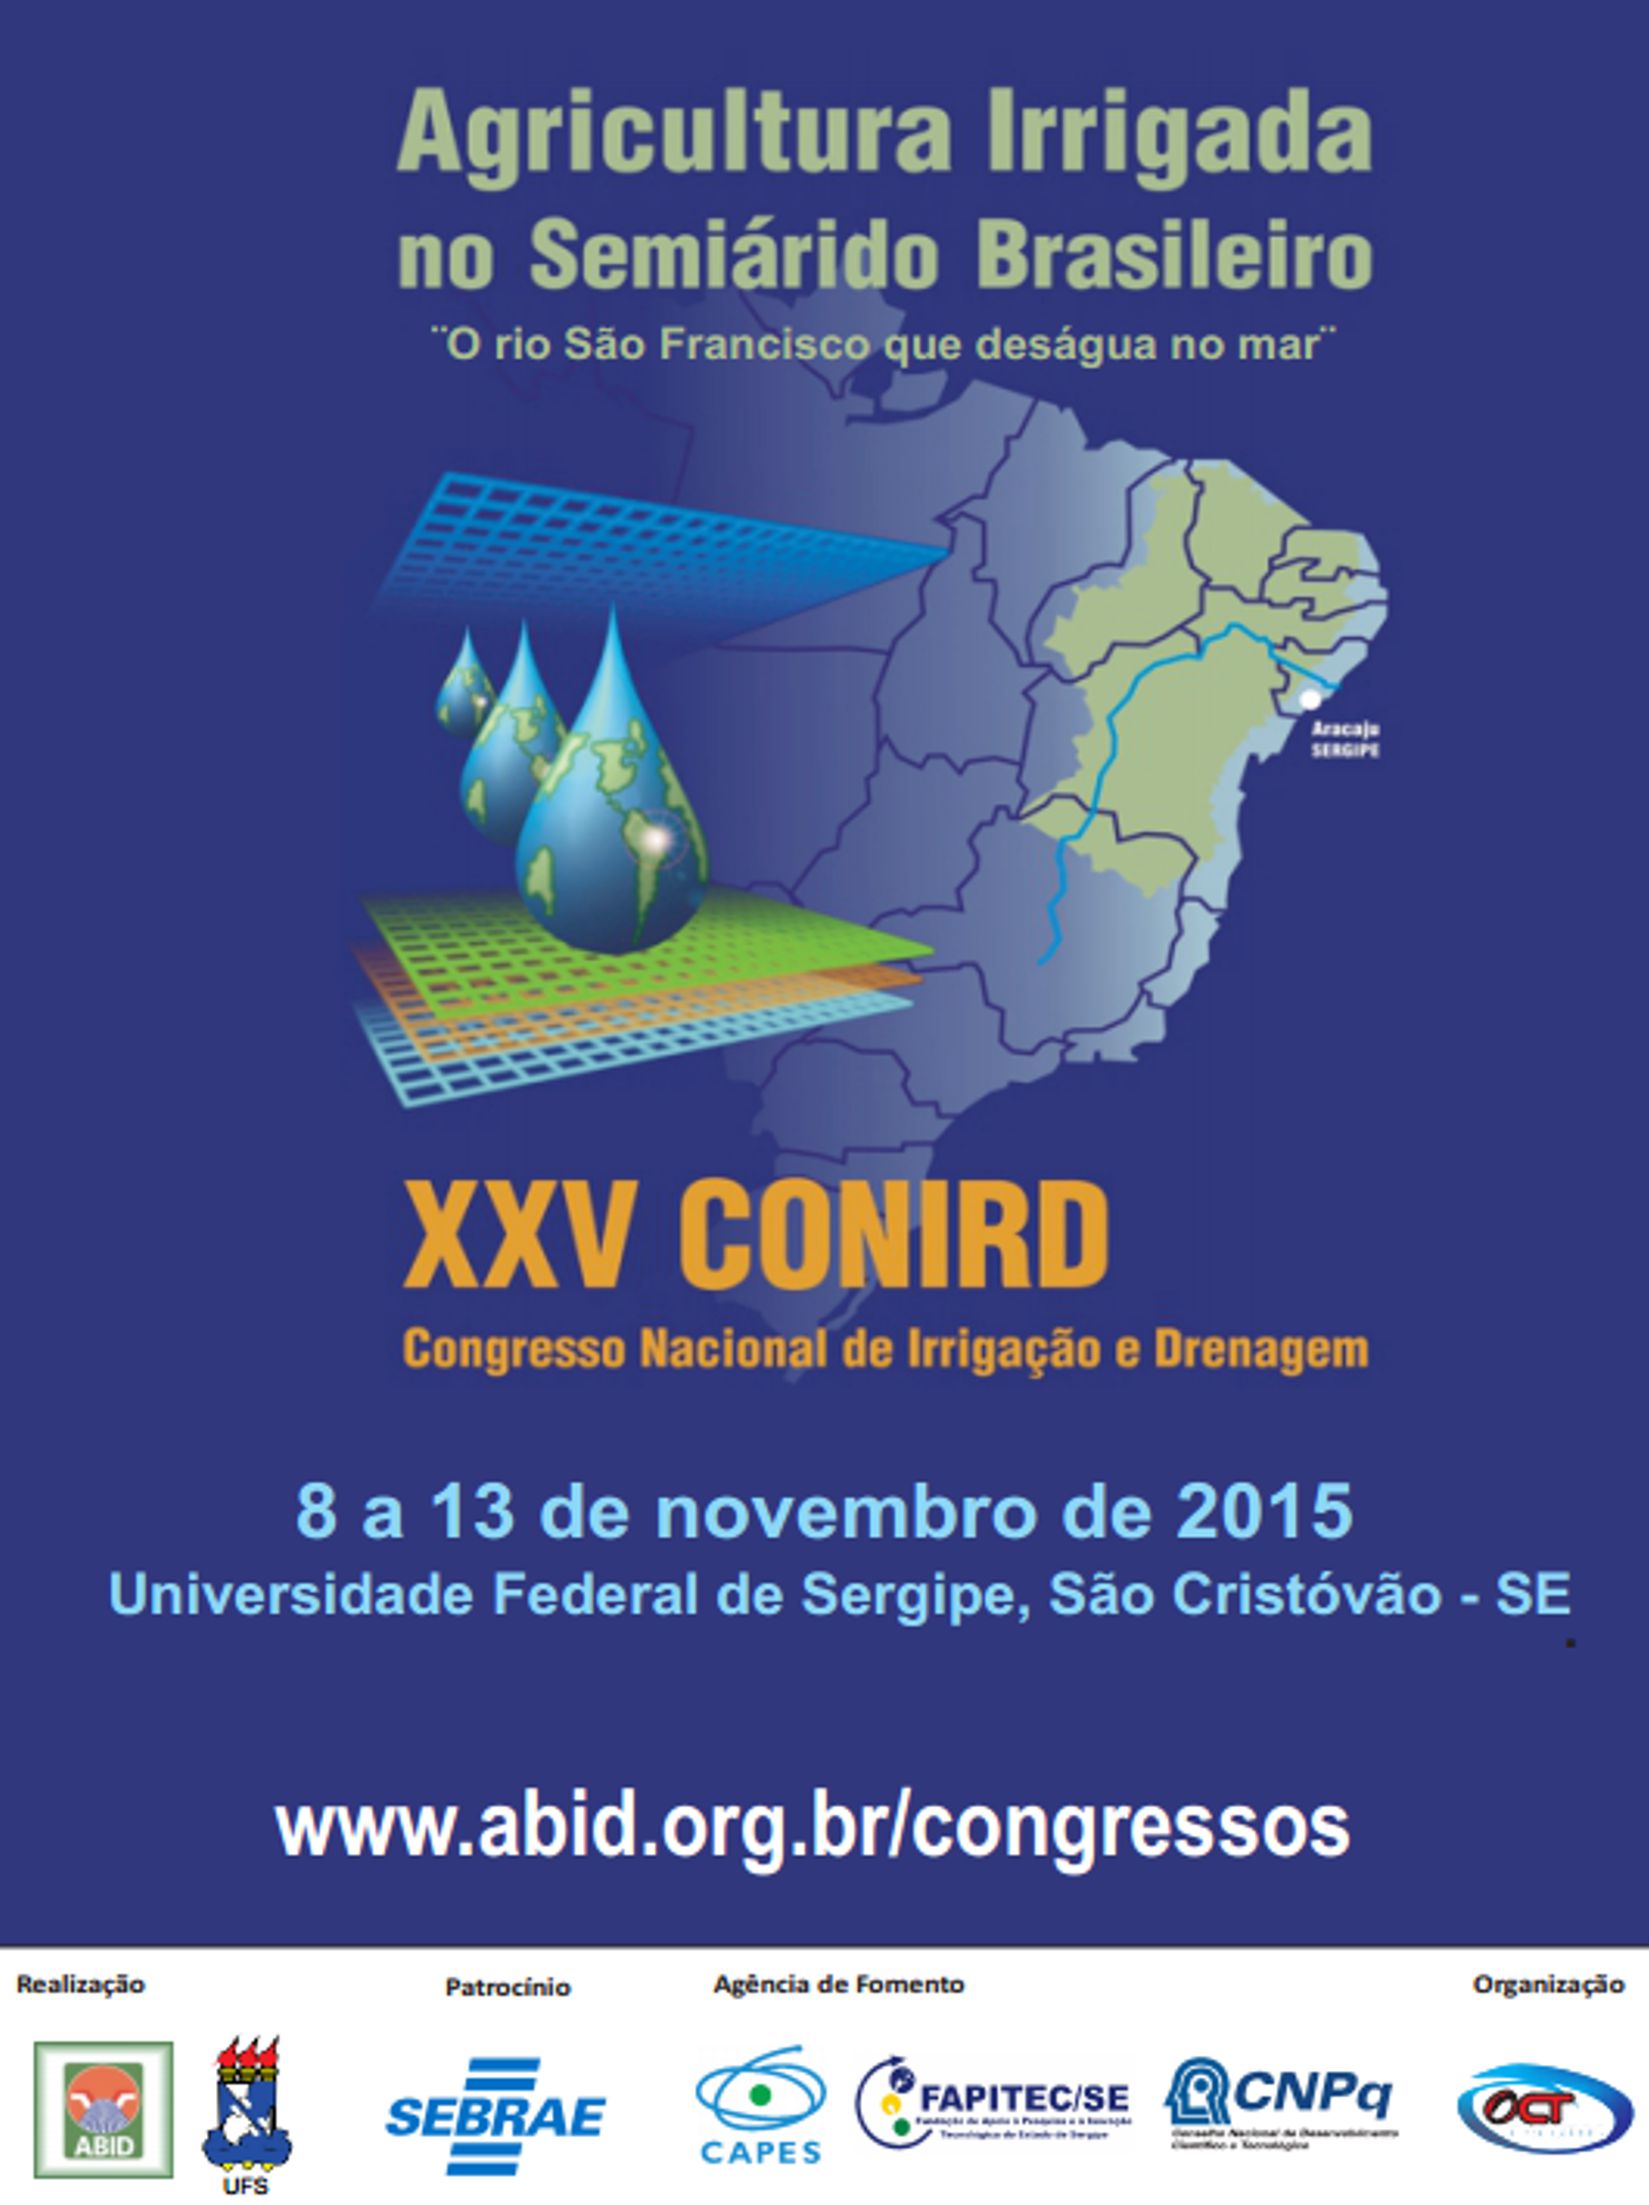 Congresso XXV CONIRD Agricultura irrigada do Semiárido brasileiro